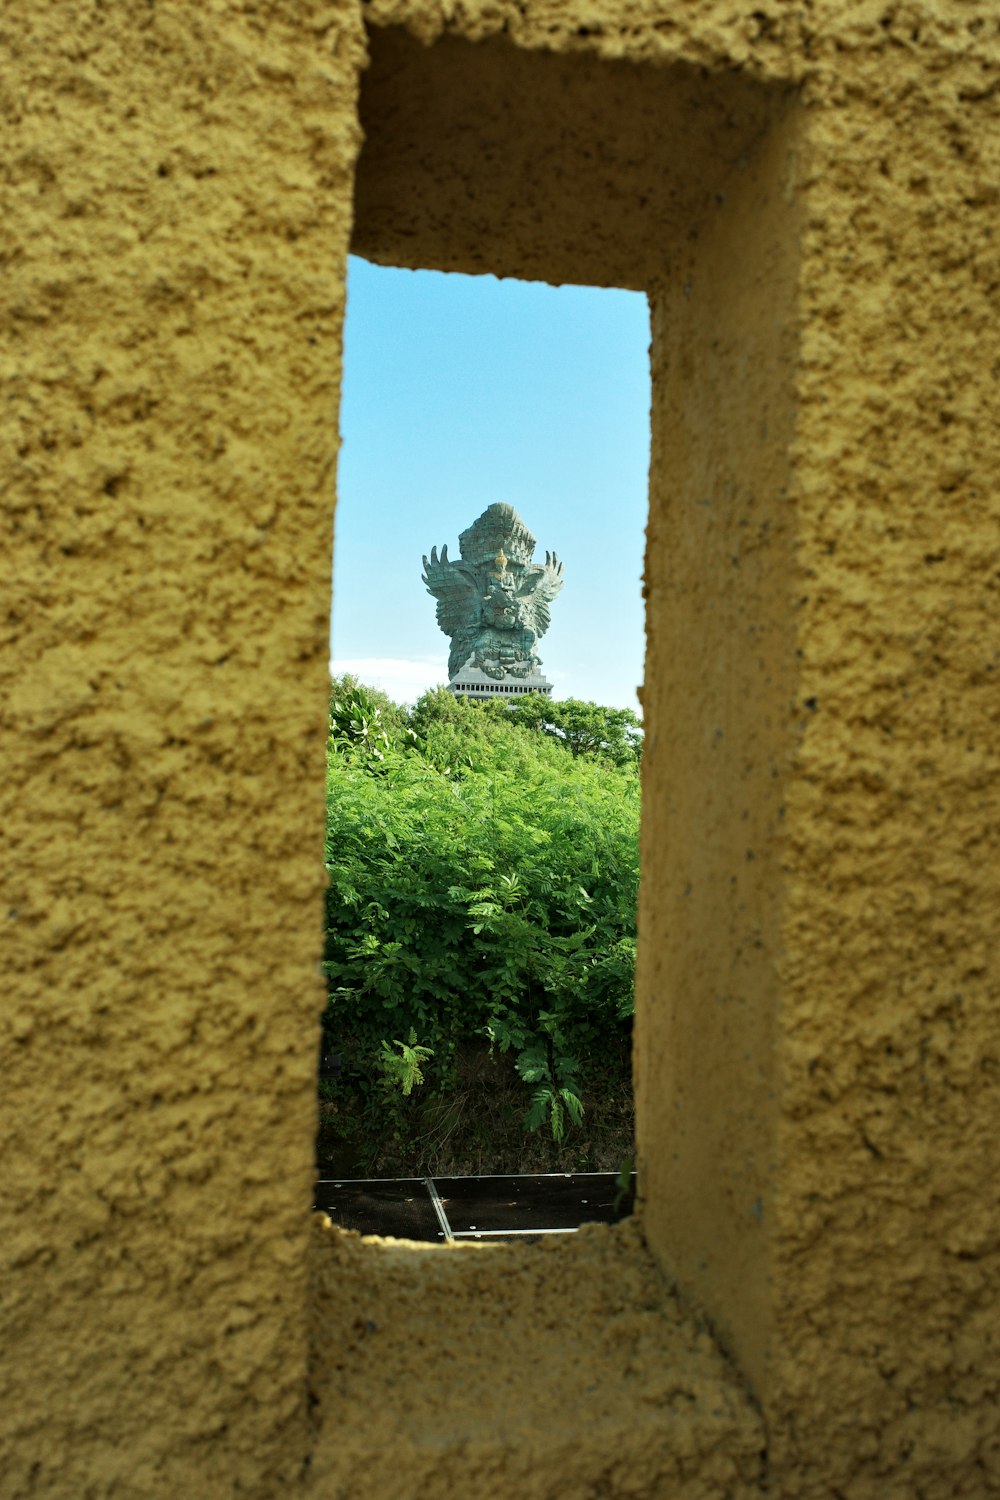 Blick auf eine Statue durch ein Loch in einer Wand